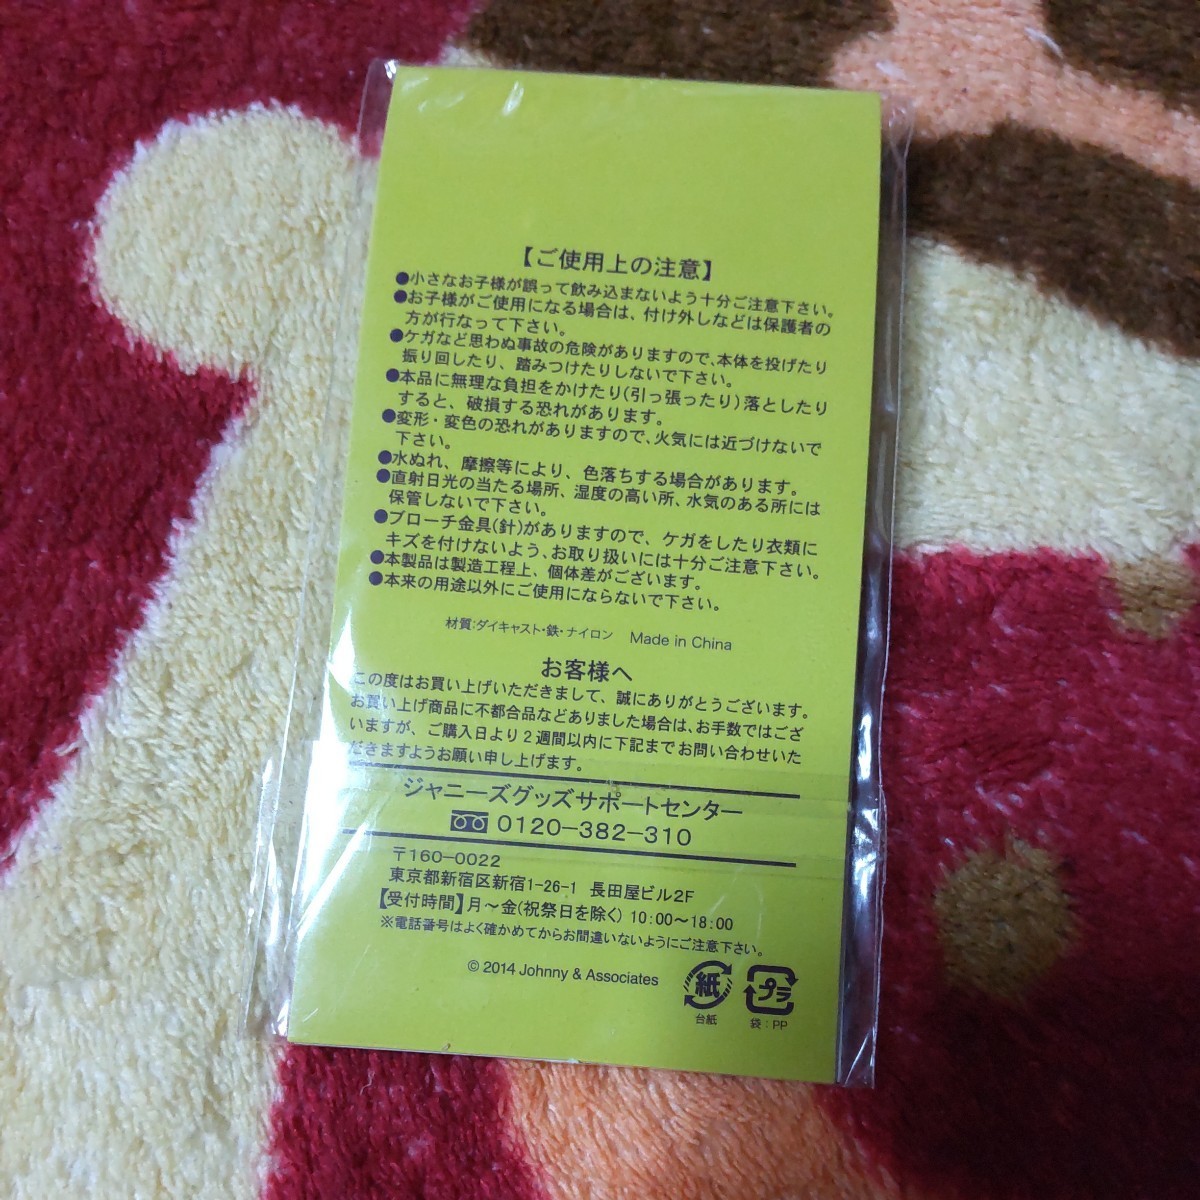 嵐 ARASHI LIVE TOUR 2014 THE DIGITALIAN 会場限定 メダルブローチ 赤